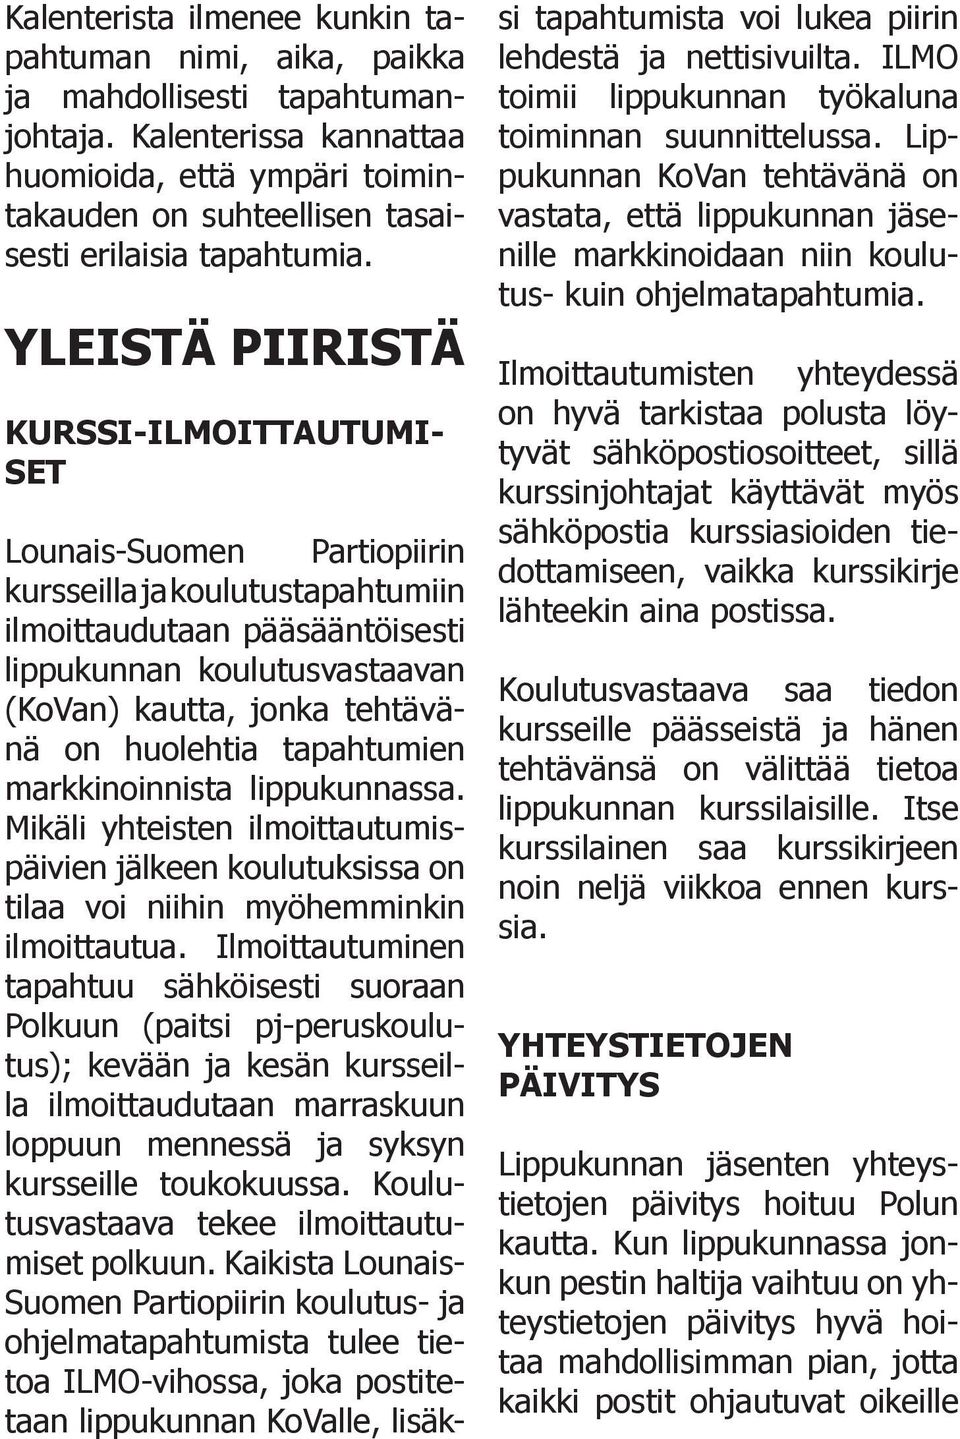 YLEISTÄ PIIRISTÄ KURSSI-ILMOITTAUTUMI- SET Lounais-Suomen Partiopiirin kursseilla ja koulutustapahtumiin ilmoittaudutaan pääsääntöisesti lippukunnan koulutusvastaavan (KoVan) kautta, jonka tehtävänä